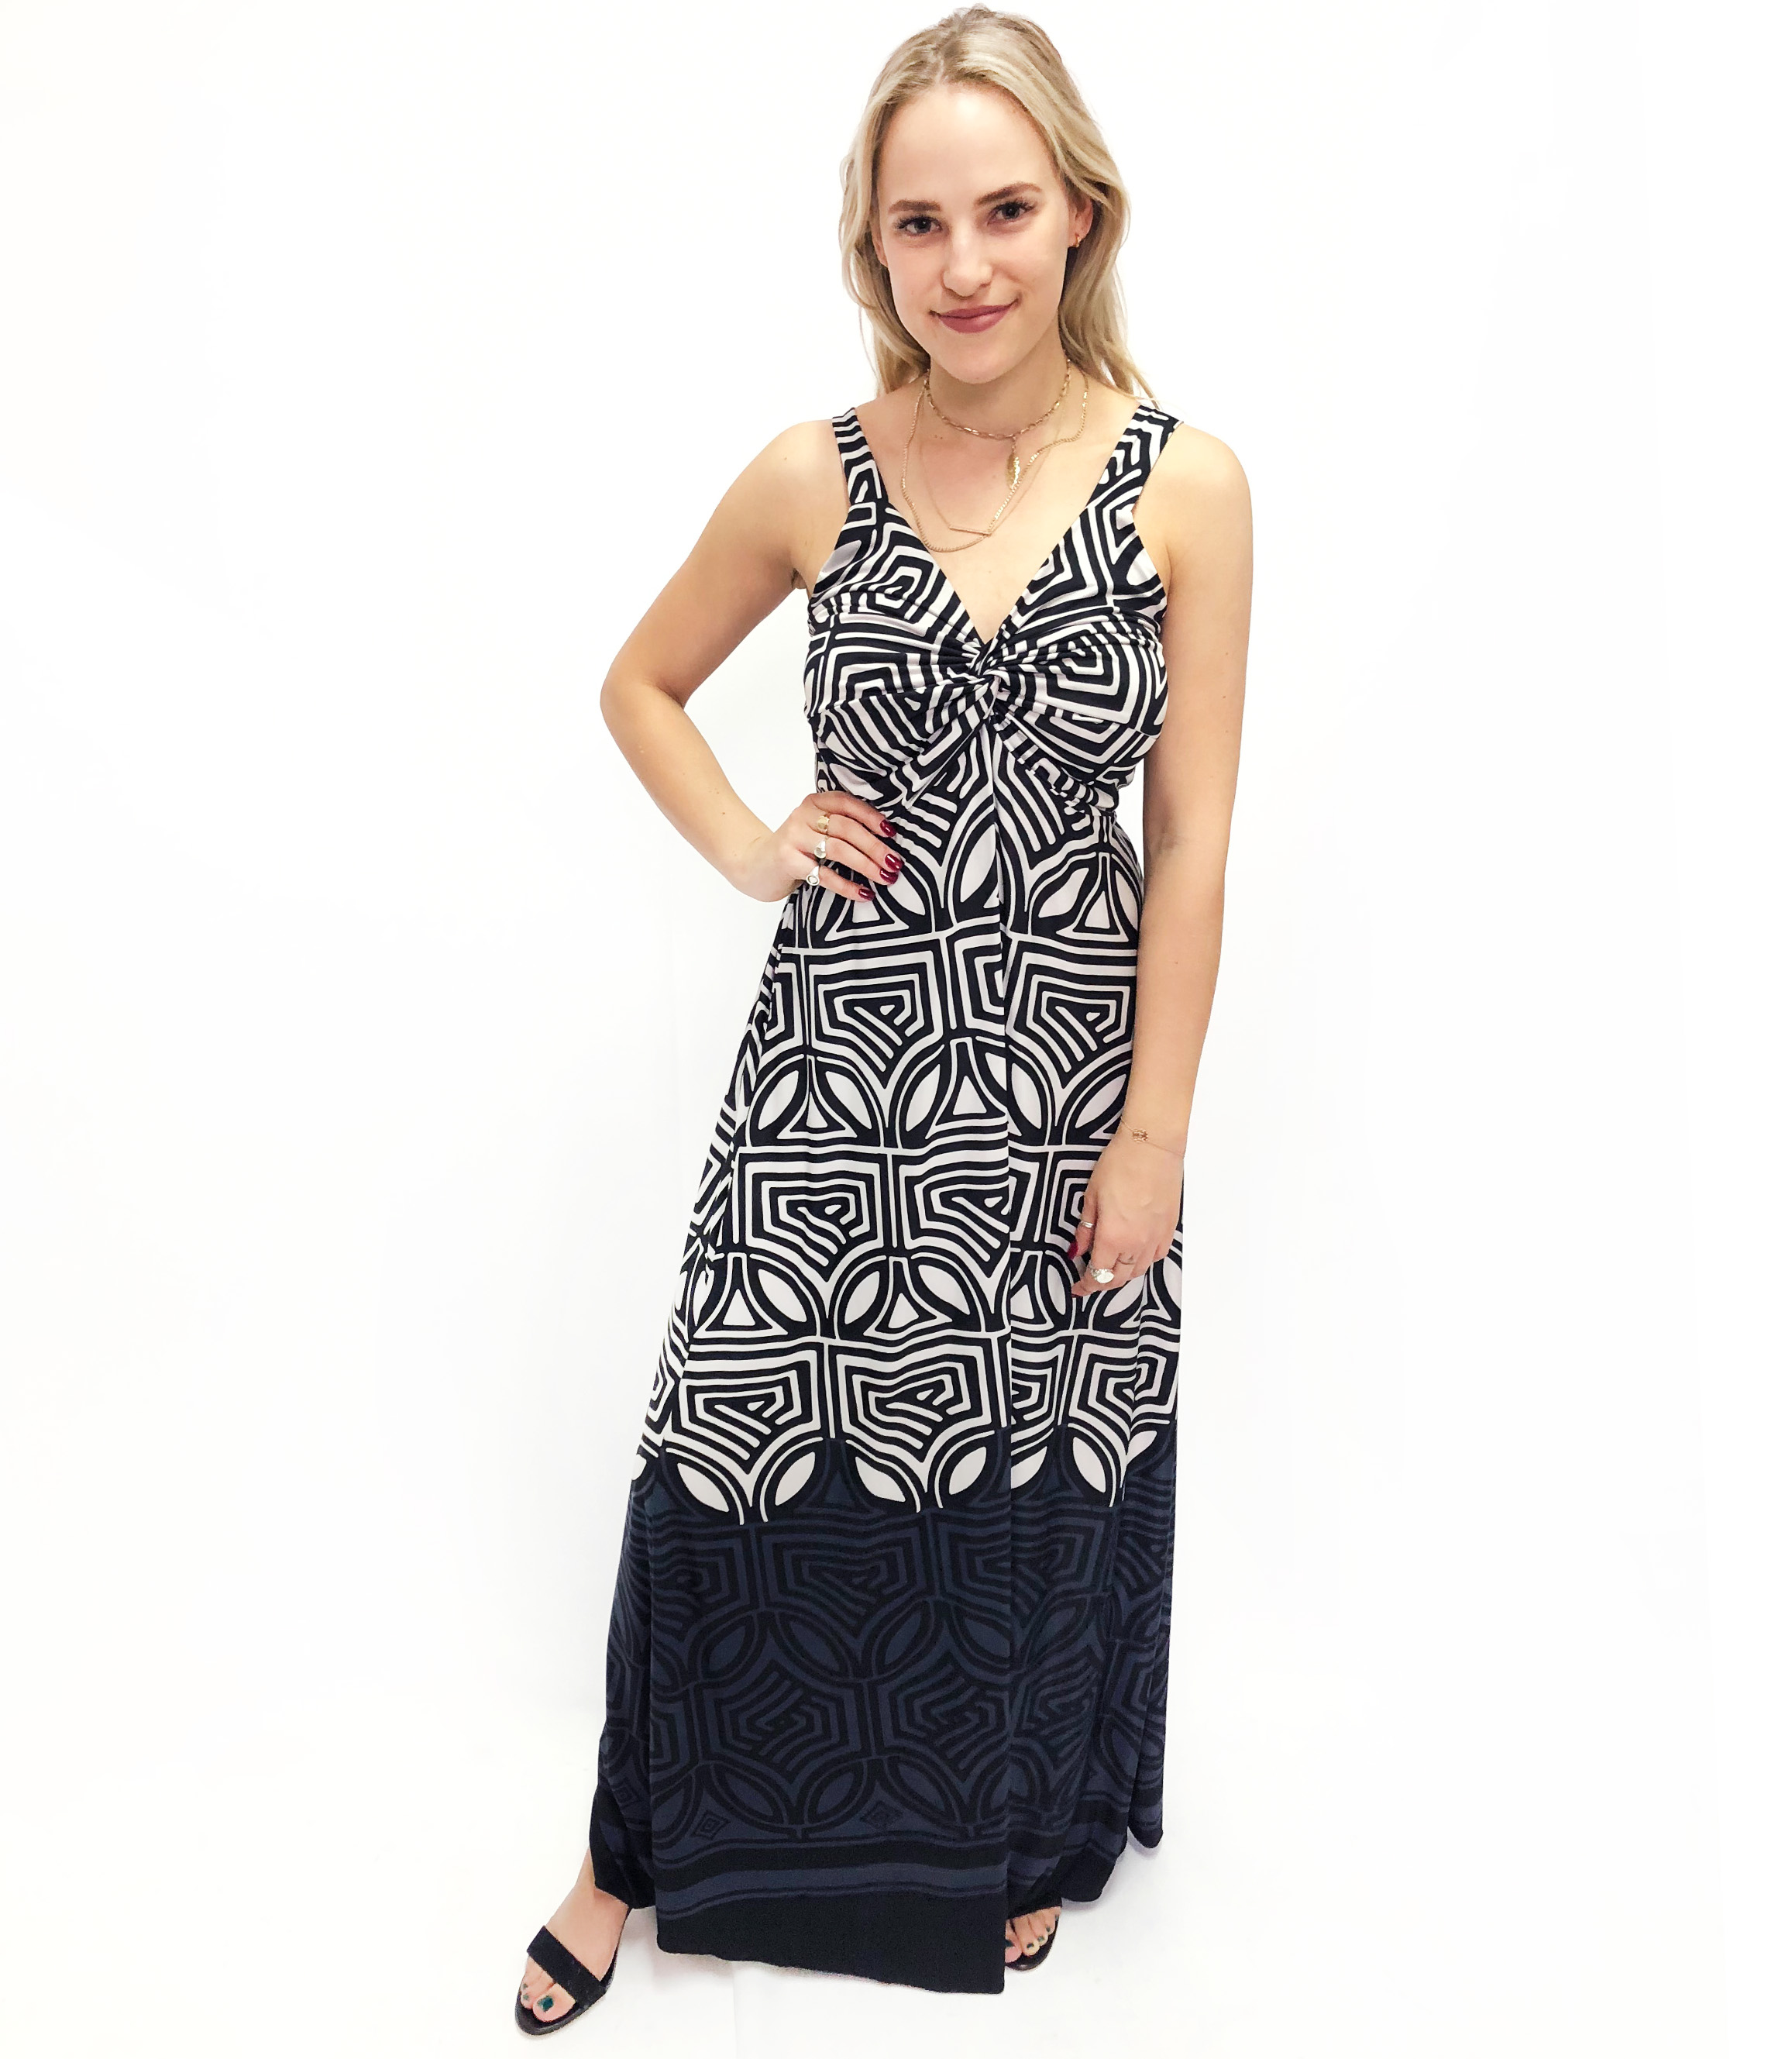 JOLIE BAM BAM NAVY LONG DRESS | Rosella - Style inspired by elegance